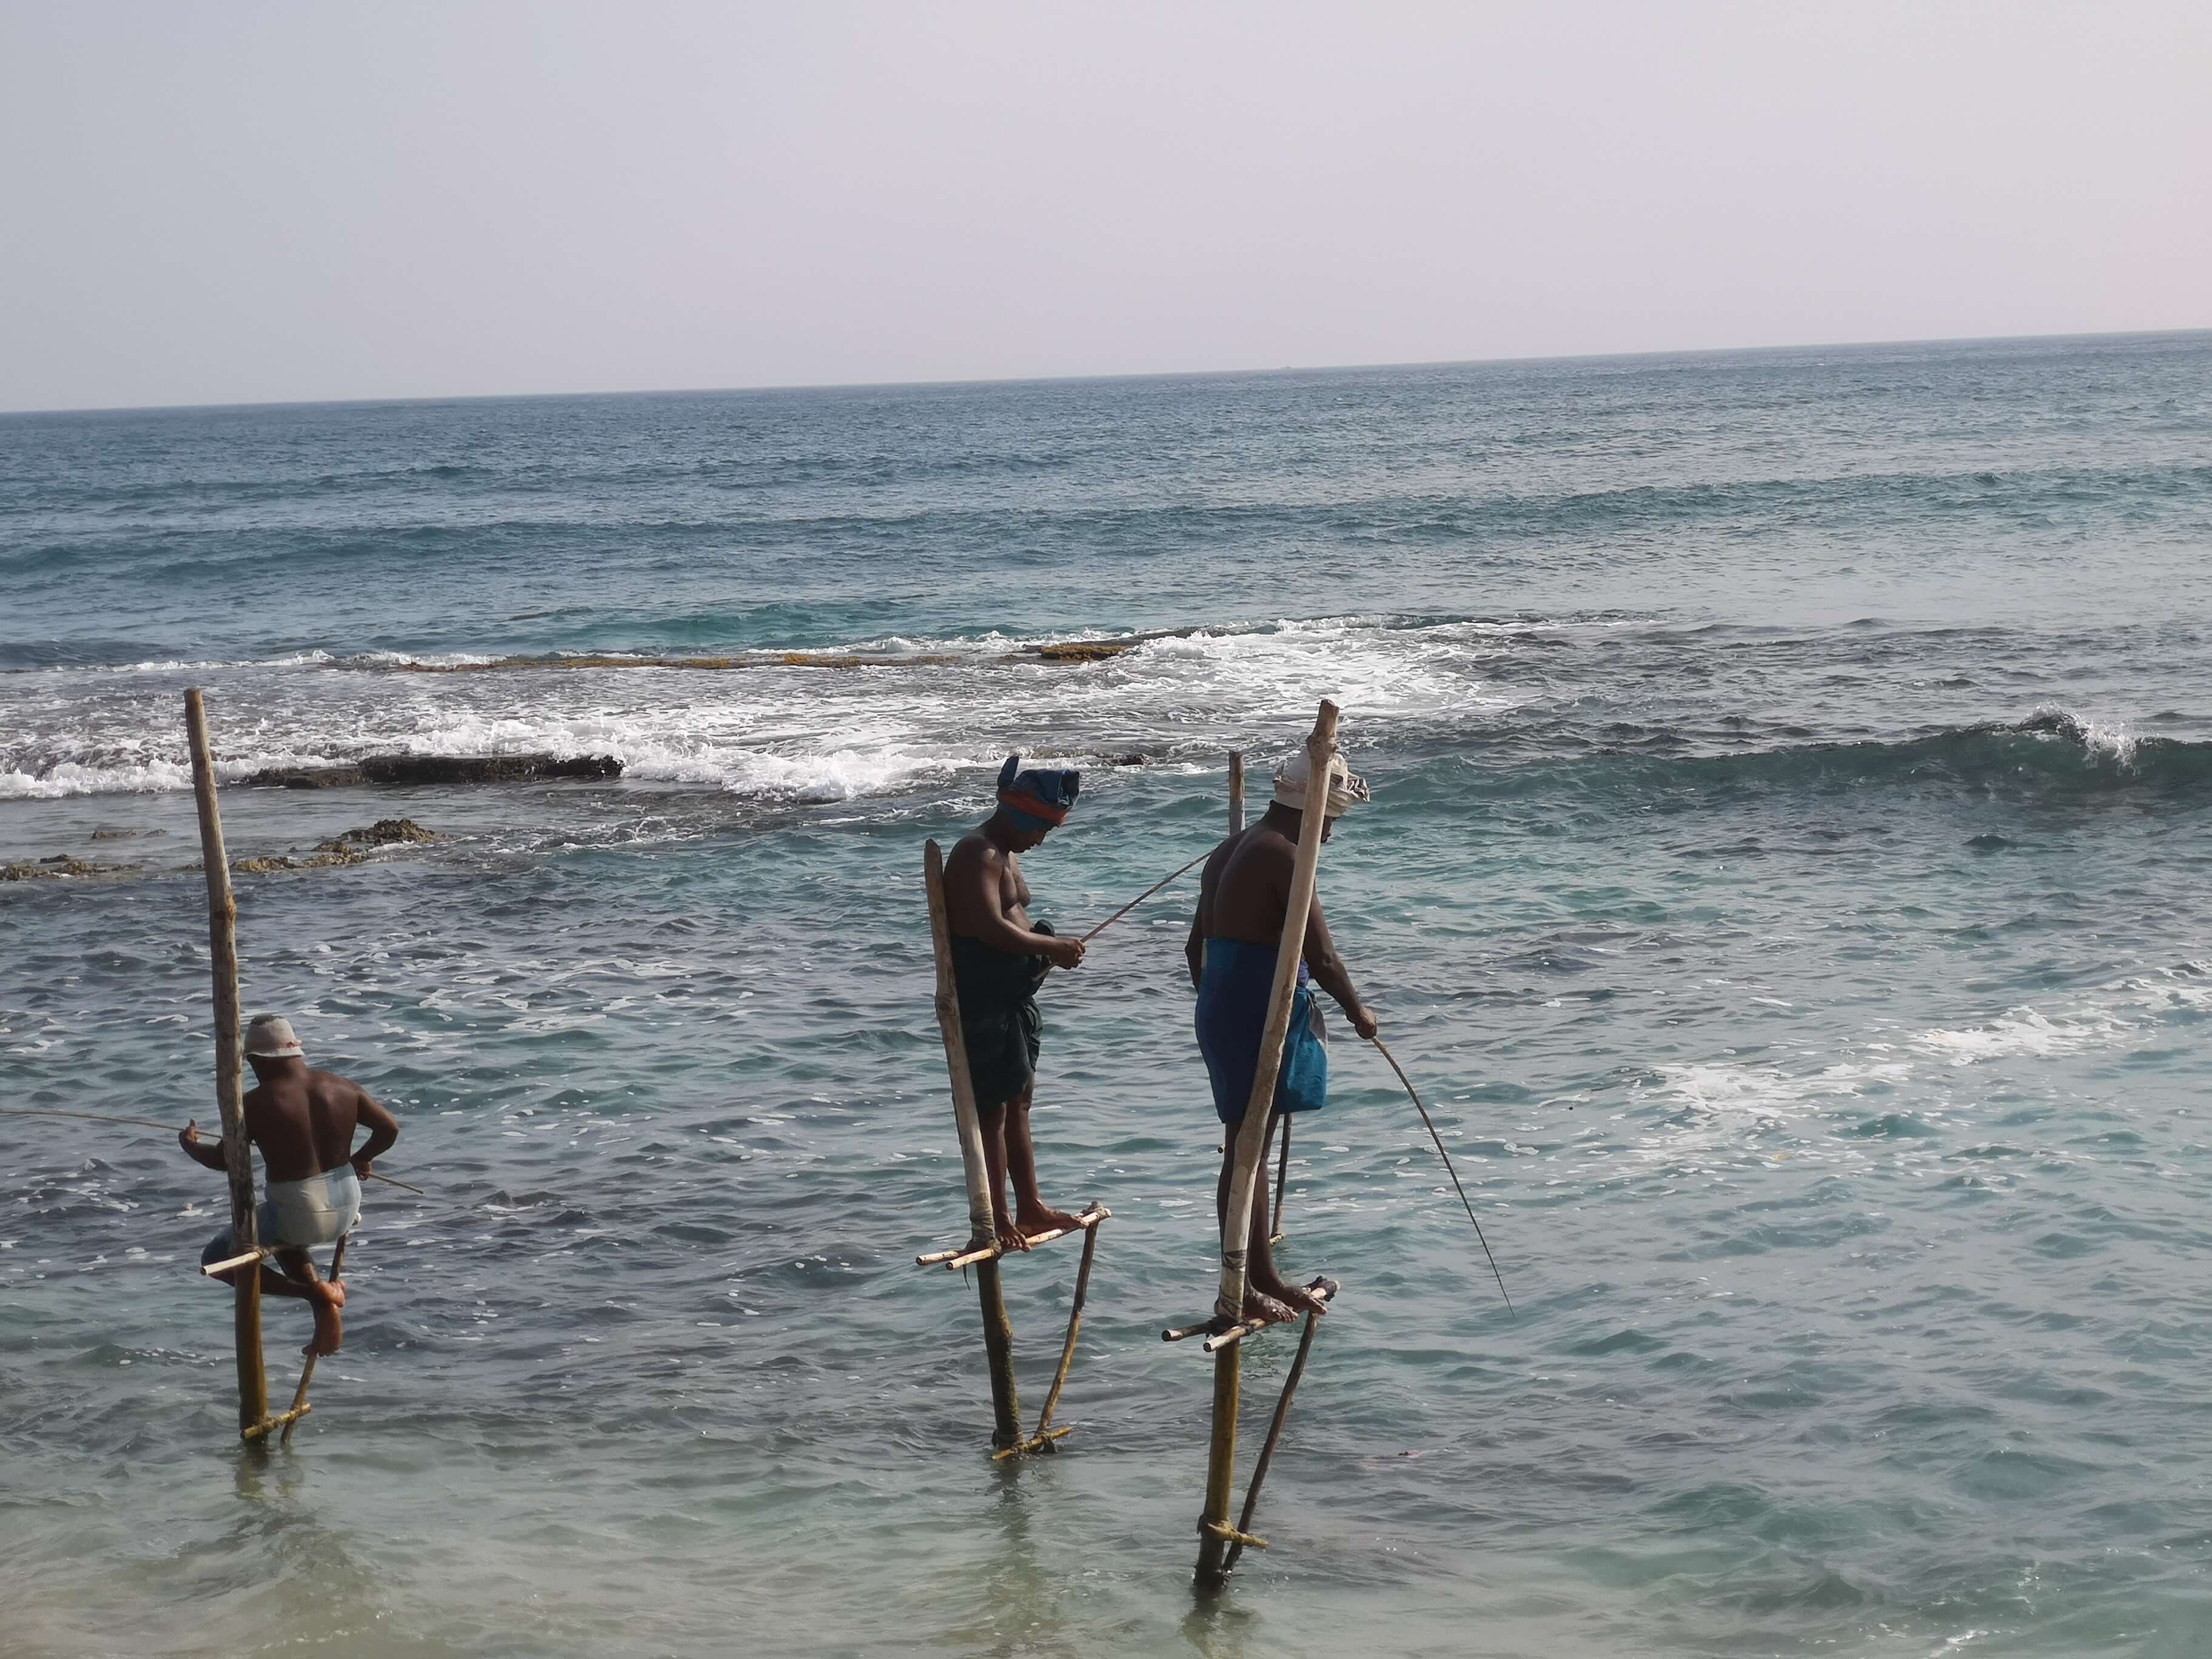 منظر لثلاثة صيادين يصطادون بطريقة صيد تقليدية تسمى "الصيد على ركائز"